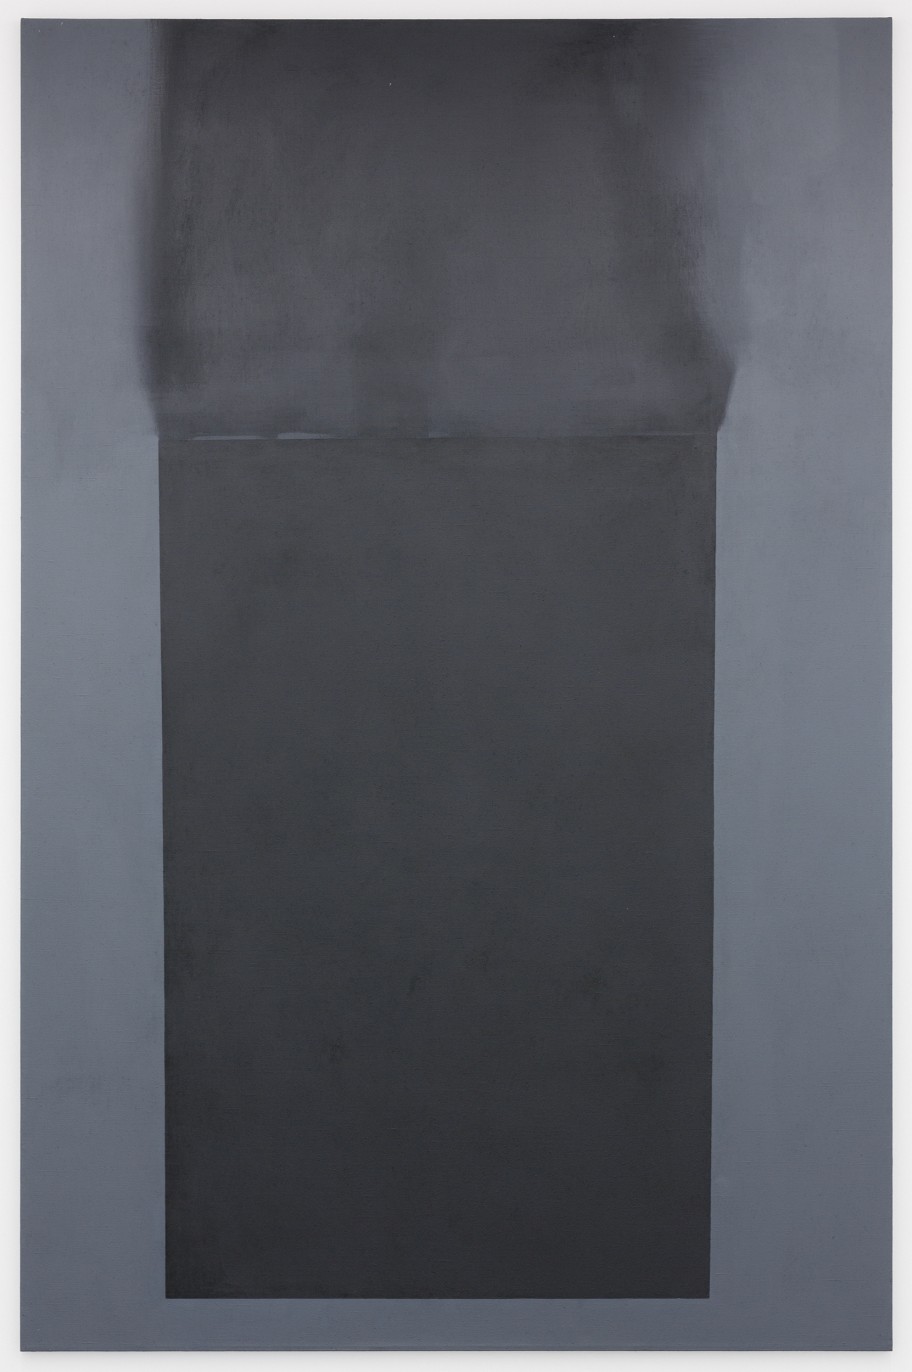 Jan Merta Vyho Elá Abstrakce / Burnt-Out Abstraction, 2009 Acryl auf Leinwand 300 x 195 cm 